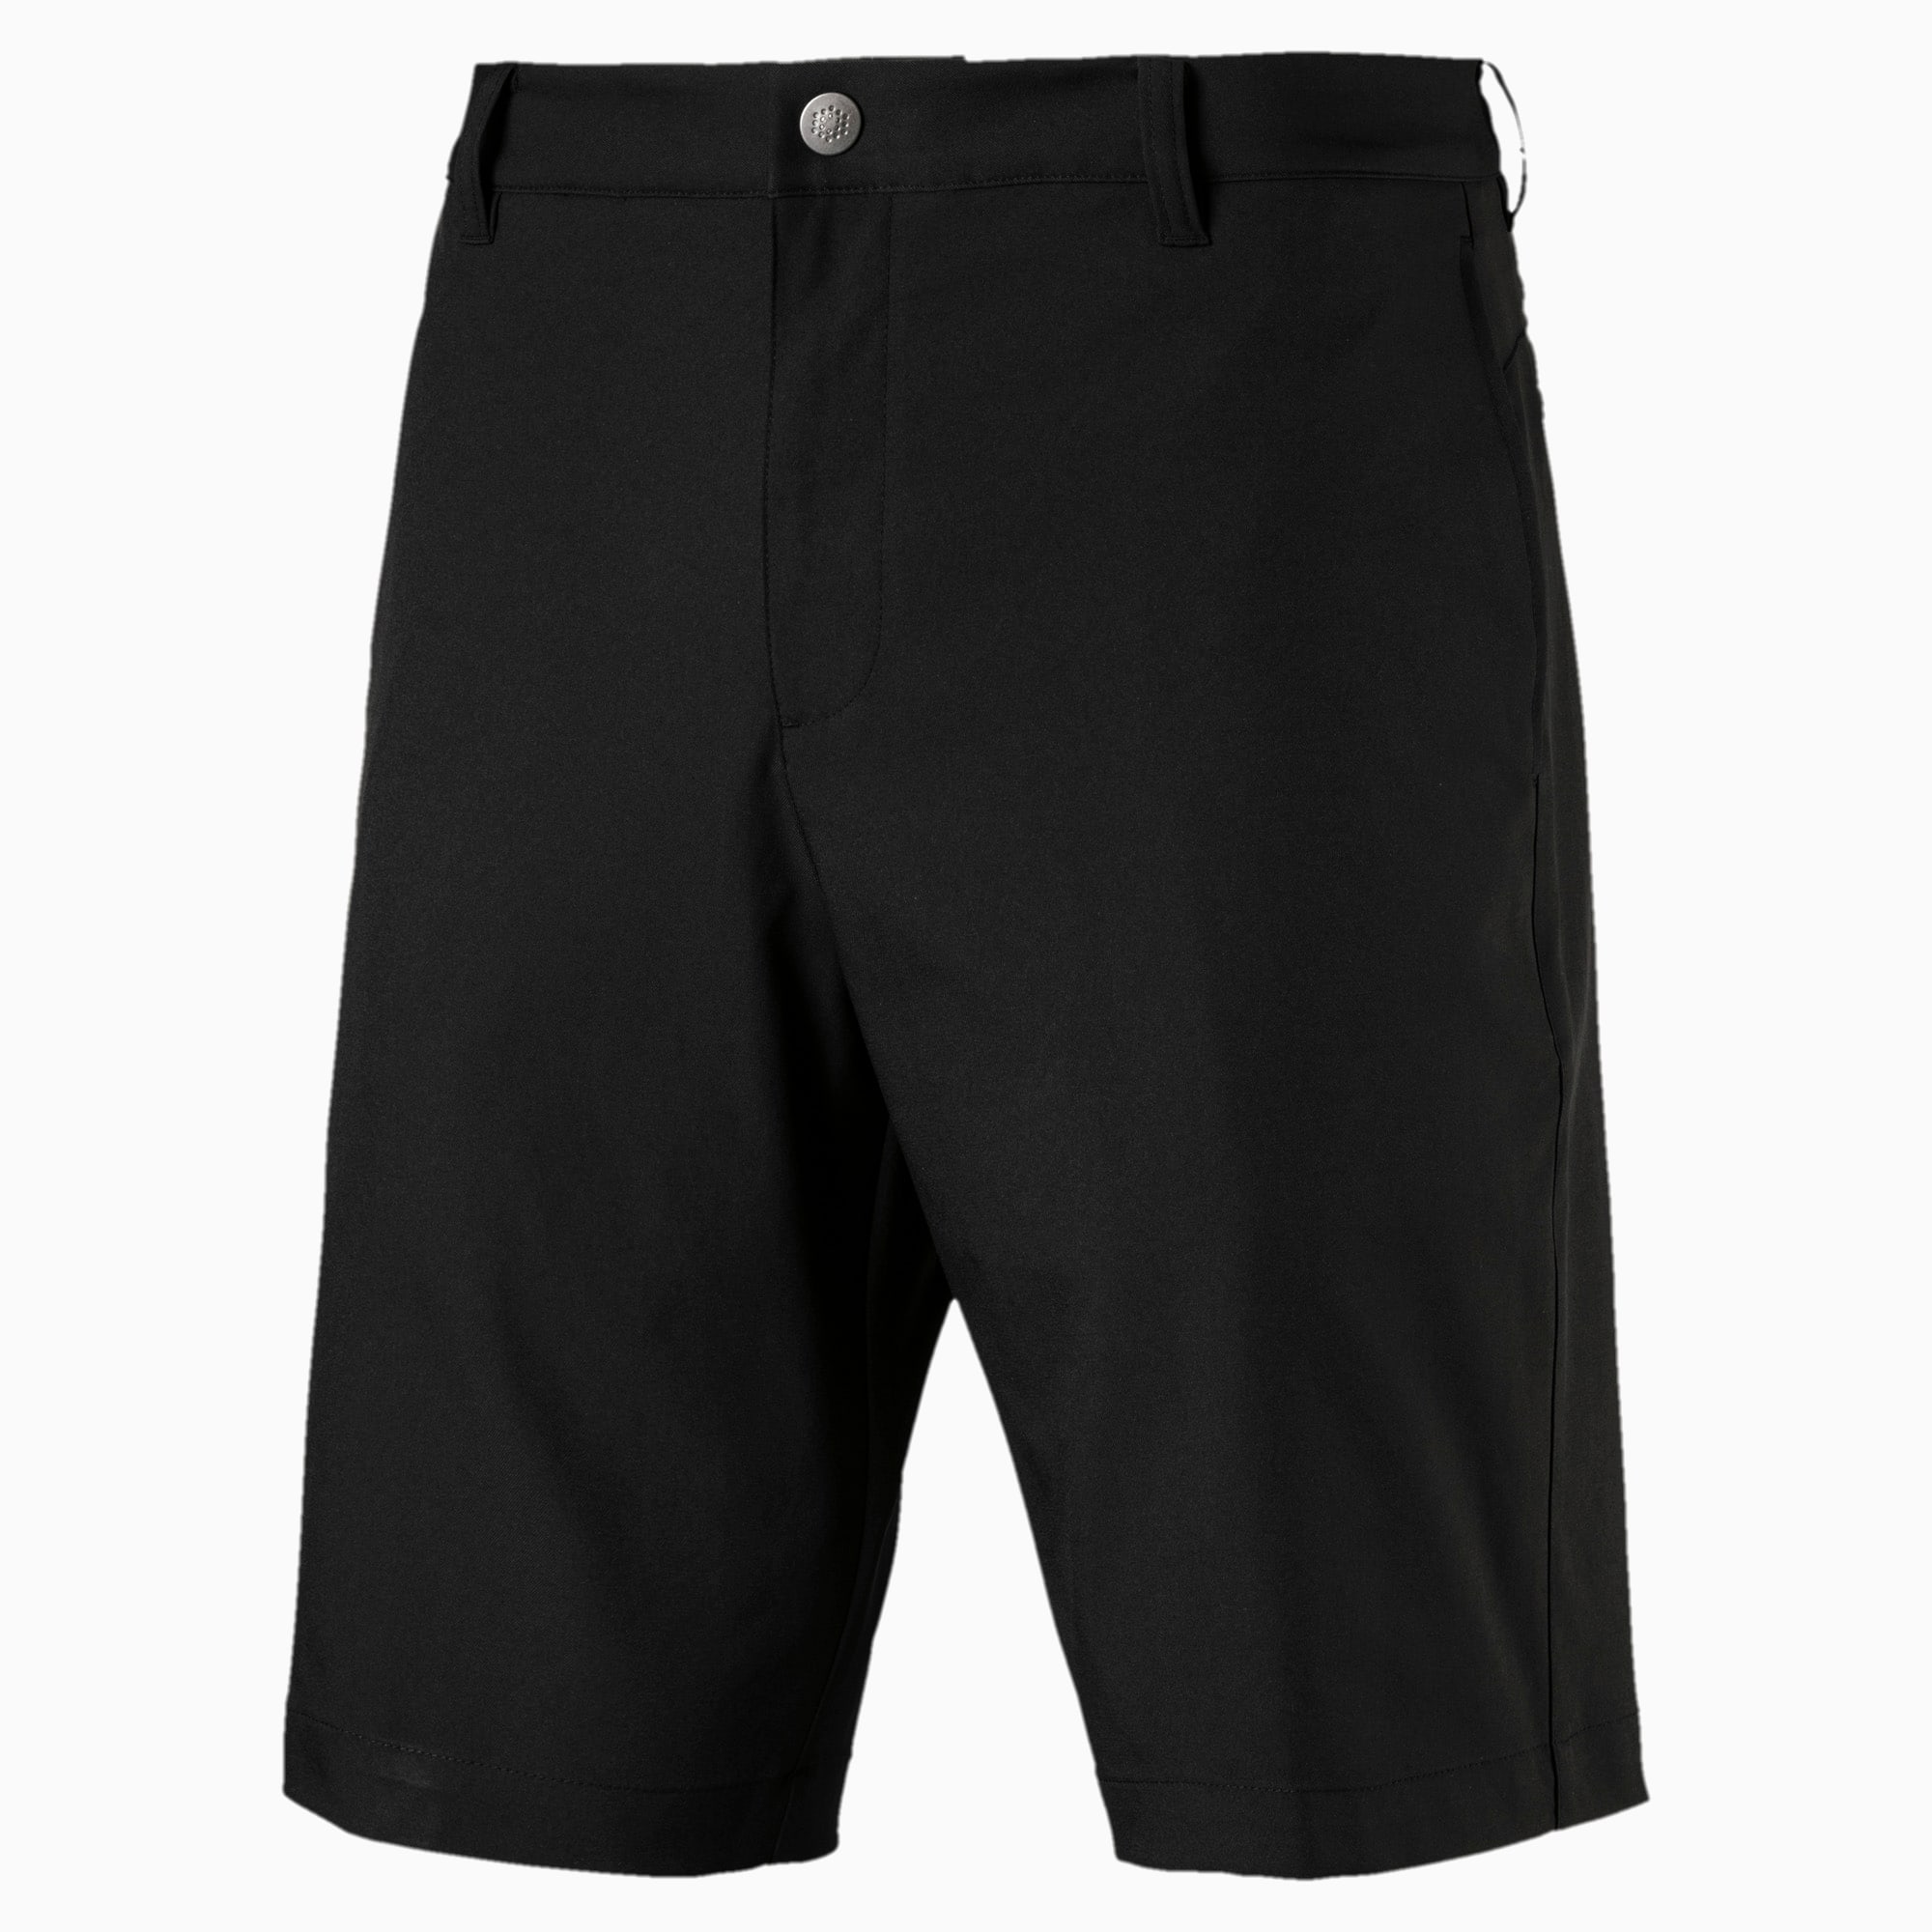 Jackpot Men's Shorts | PUMA US